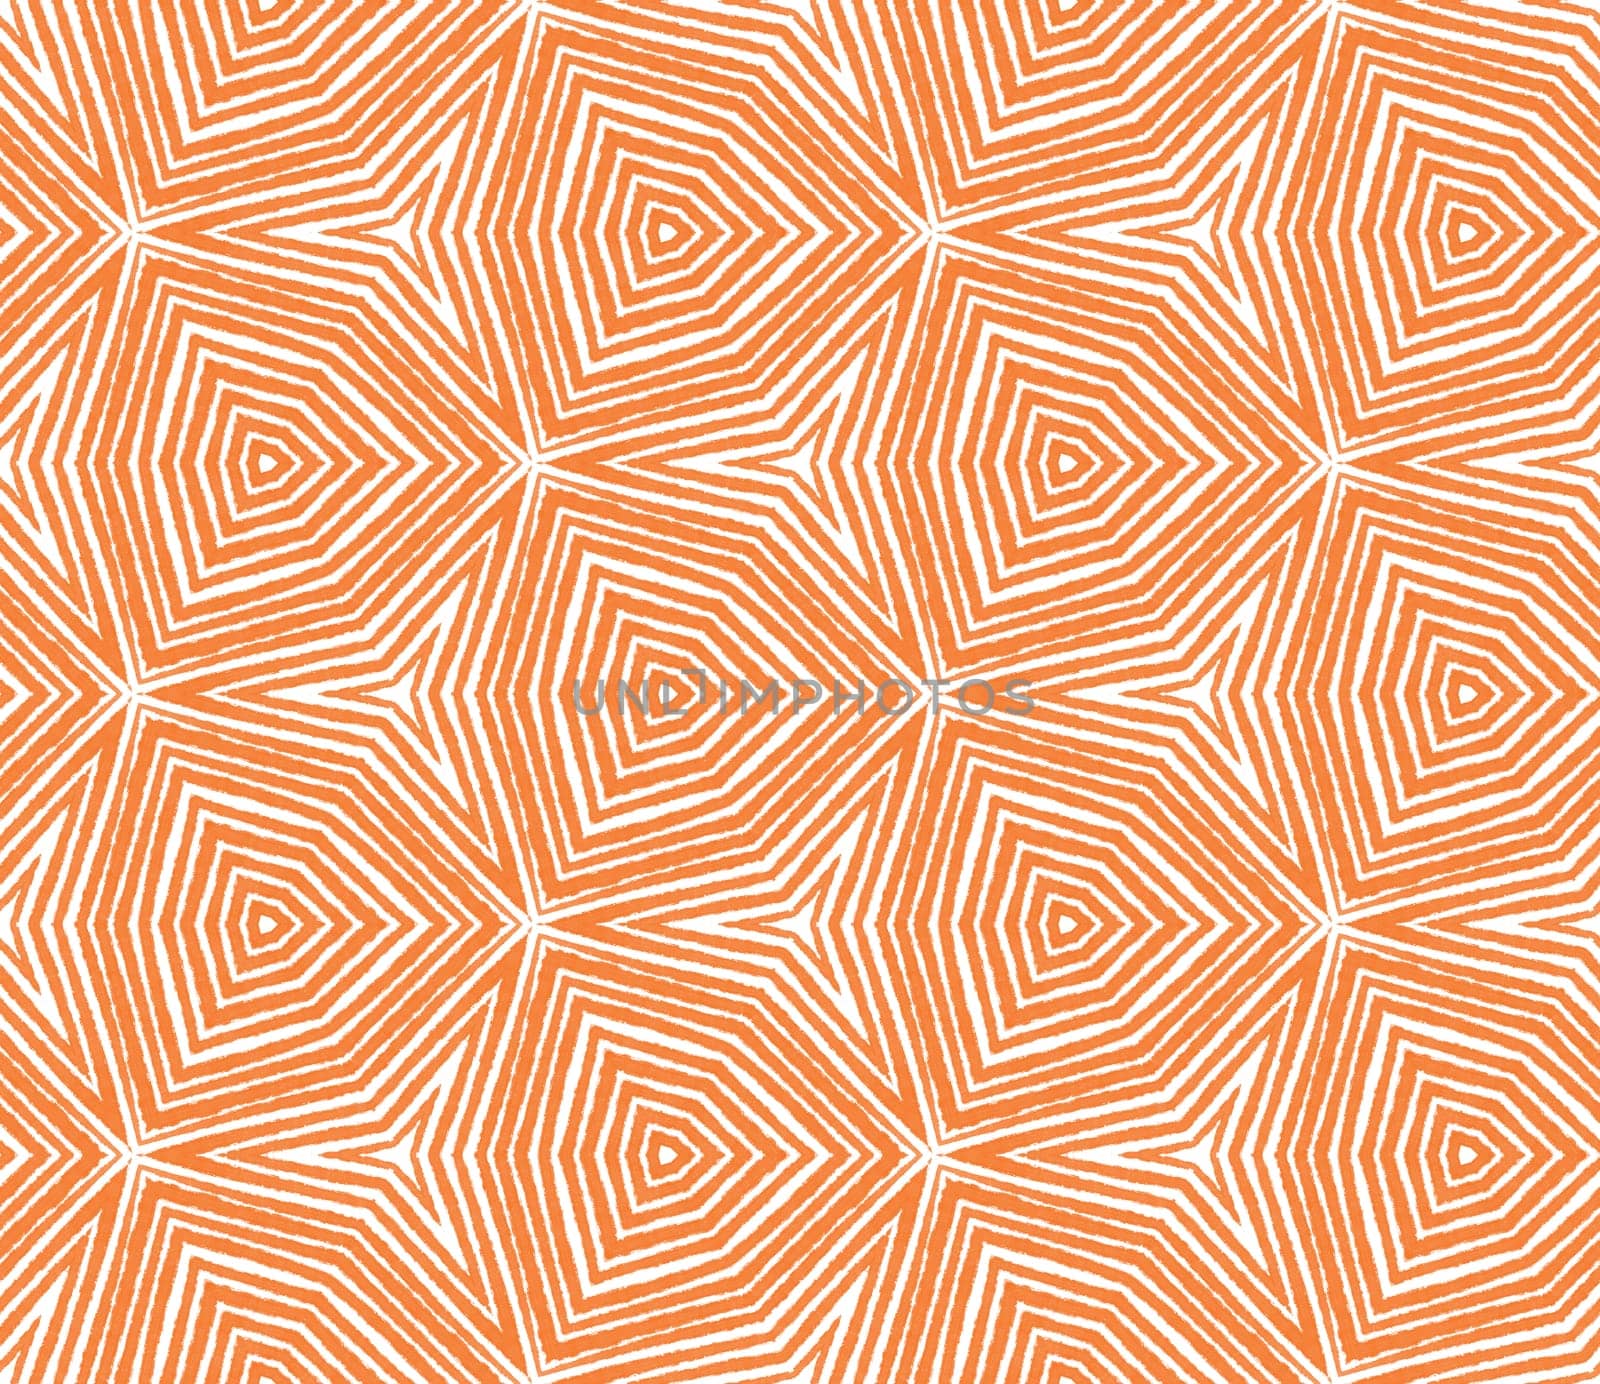 Textured stripes pattern. Orange symmetrical kaleidoscope background. Textile ready gorgeous print, swimwear fabric, wallpaper, wrapping. Trendy textured stripes design.